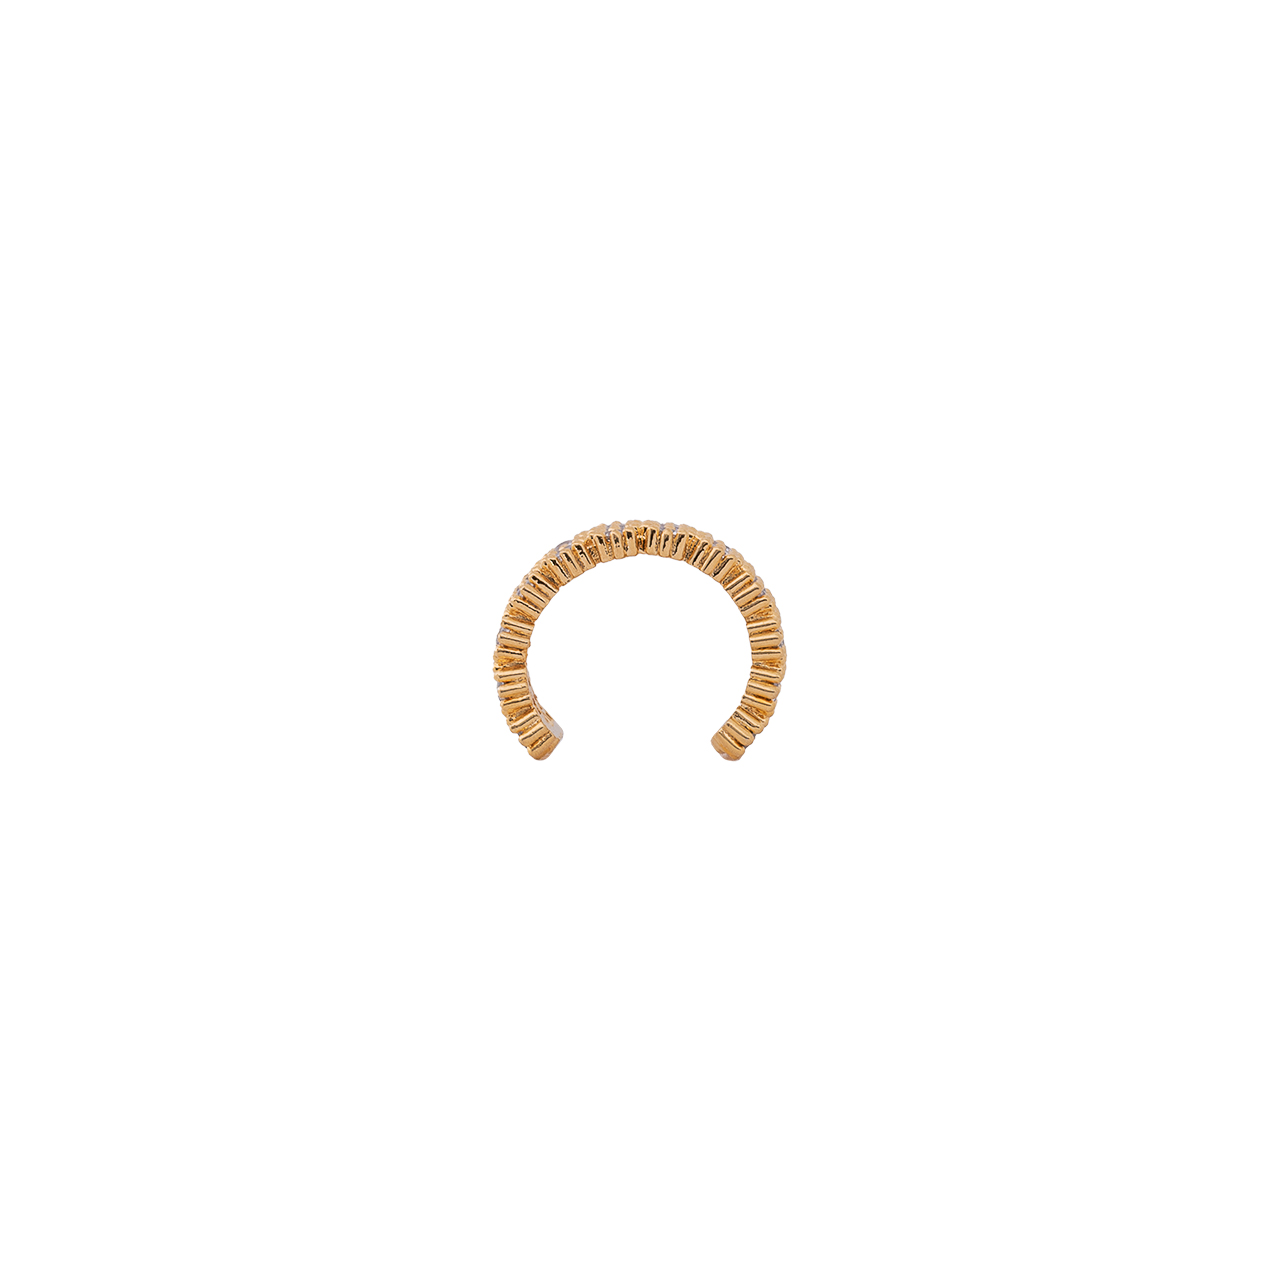 Earcuff de bronce con baño de oro 24k- Jewelry- Joyeria- brand- ventas al mayor- exclusiviad- tendencia marca SODHANA